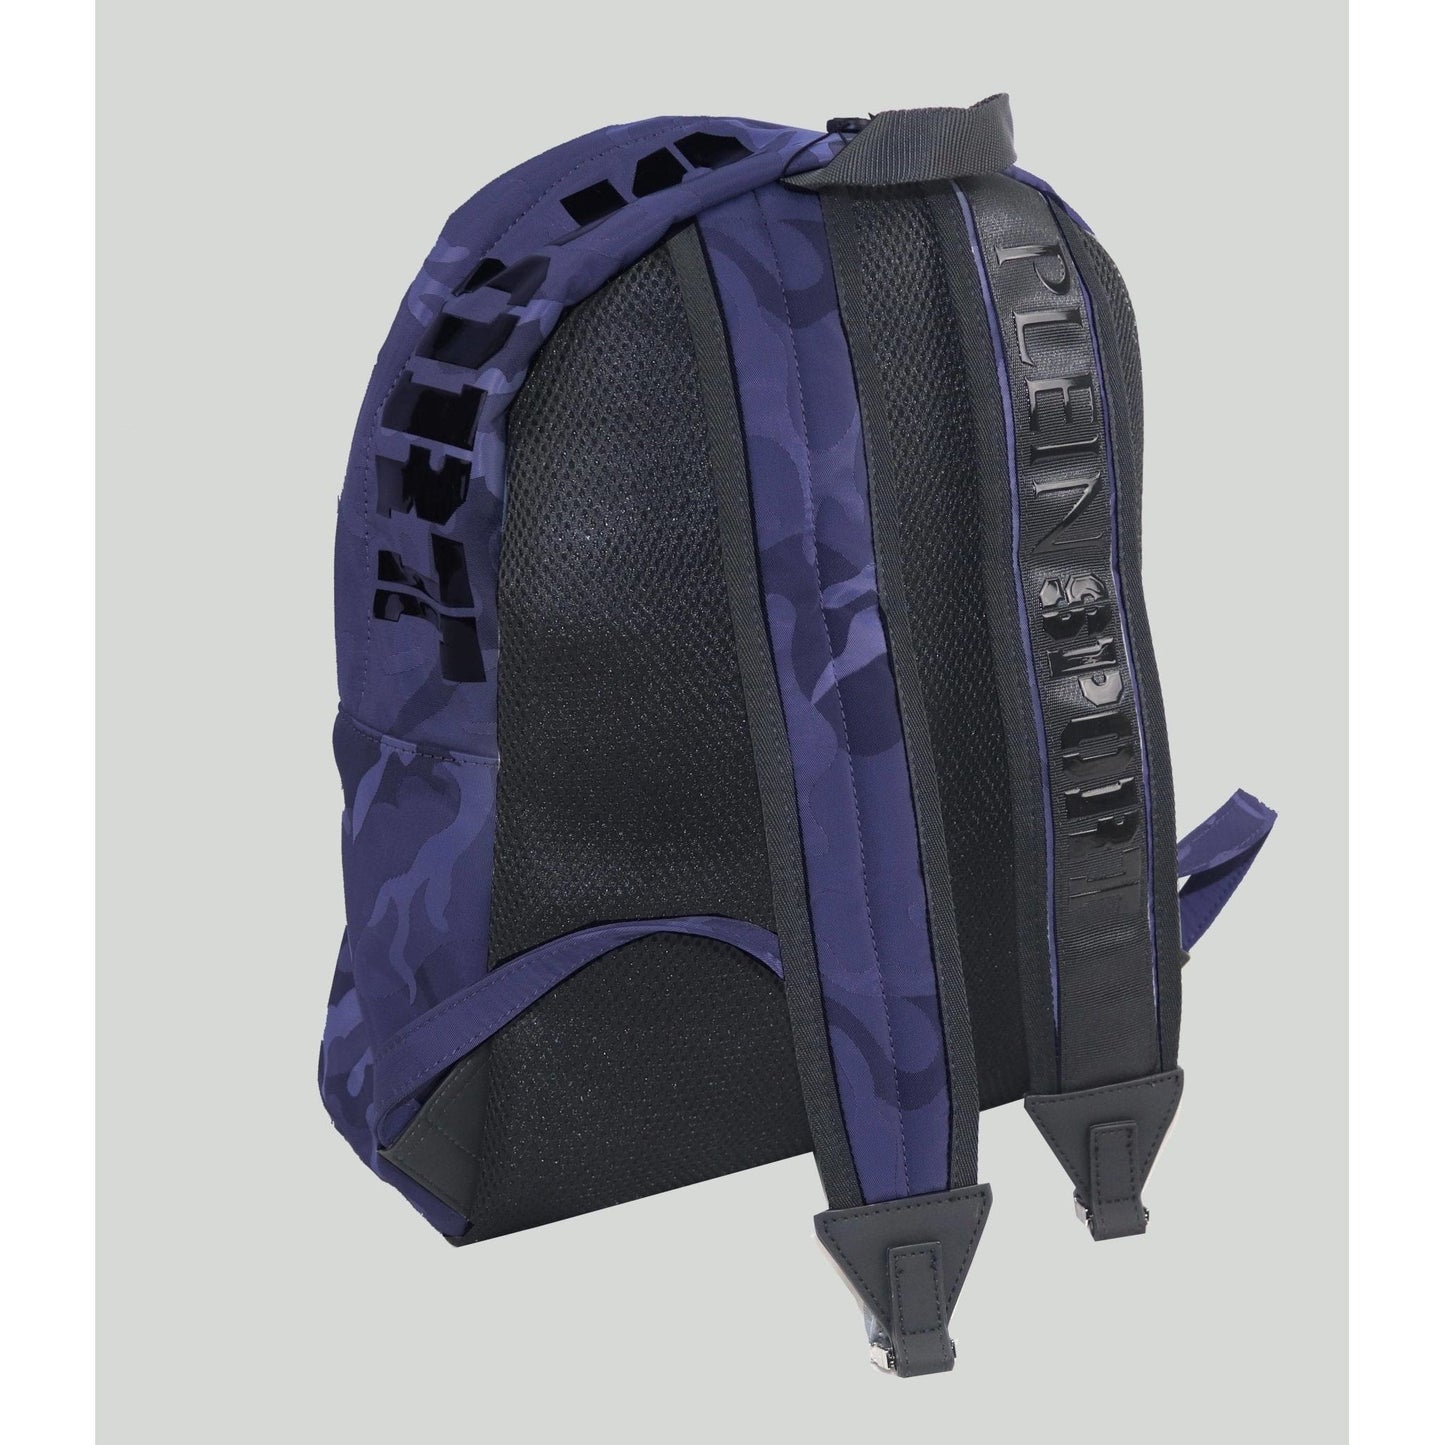 Plein Sport Unisex Military Print Navy "ZAINO EASTPAK" Backpack - Brandat Outlet